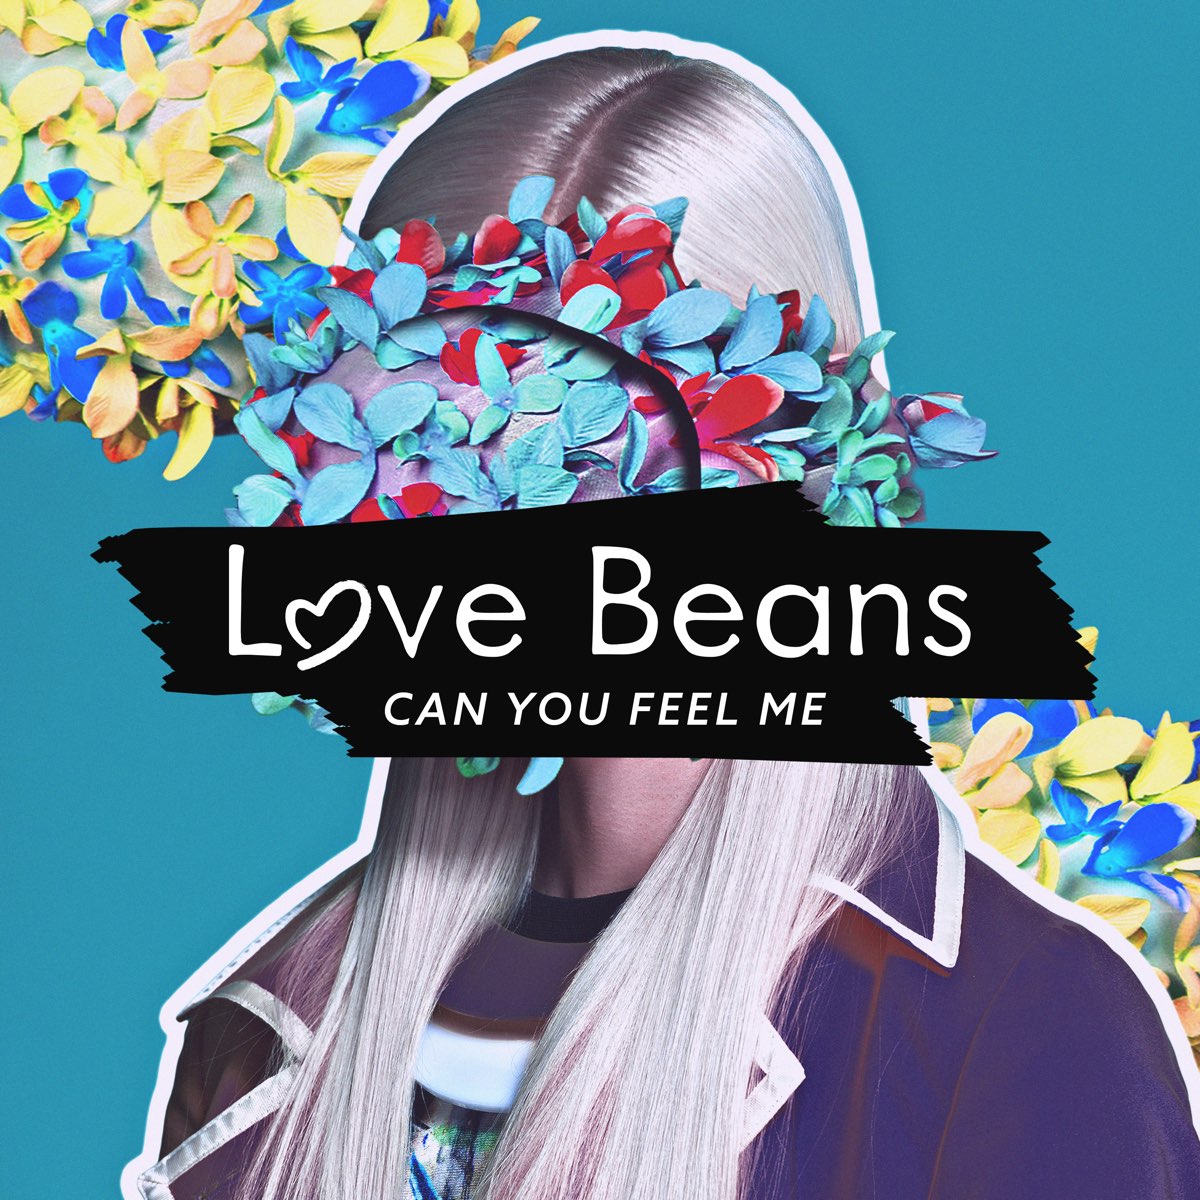 Can you feel life. Love Beans. I can feel you. I feel Love песня. Love Beans исполнитель фото.